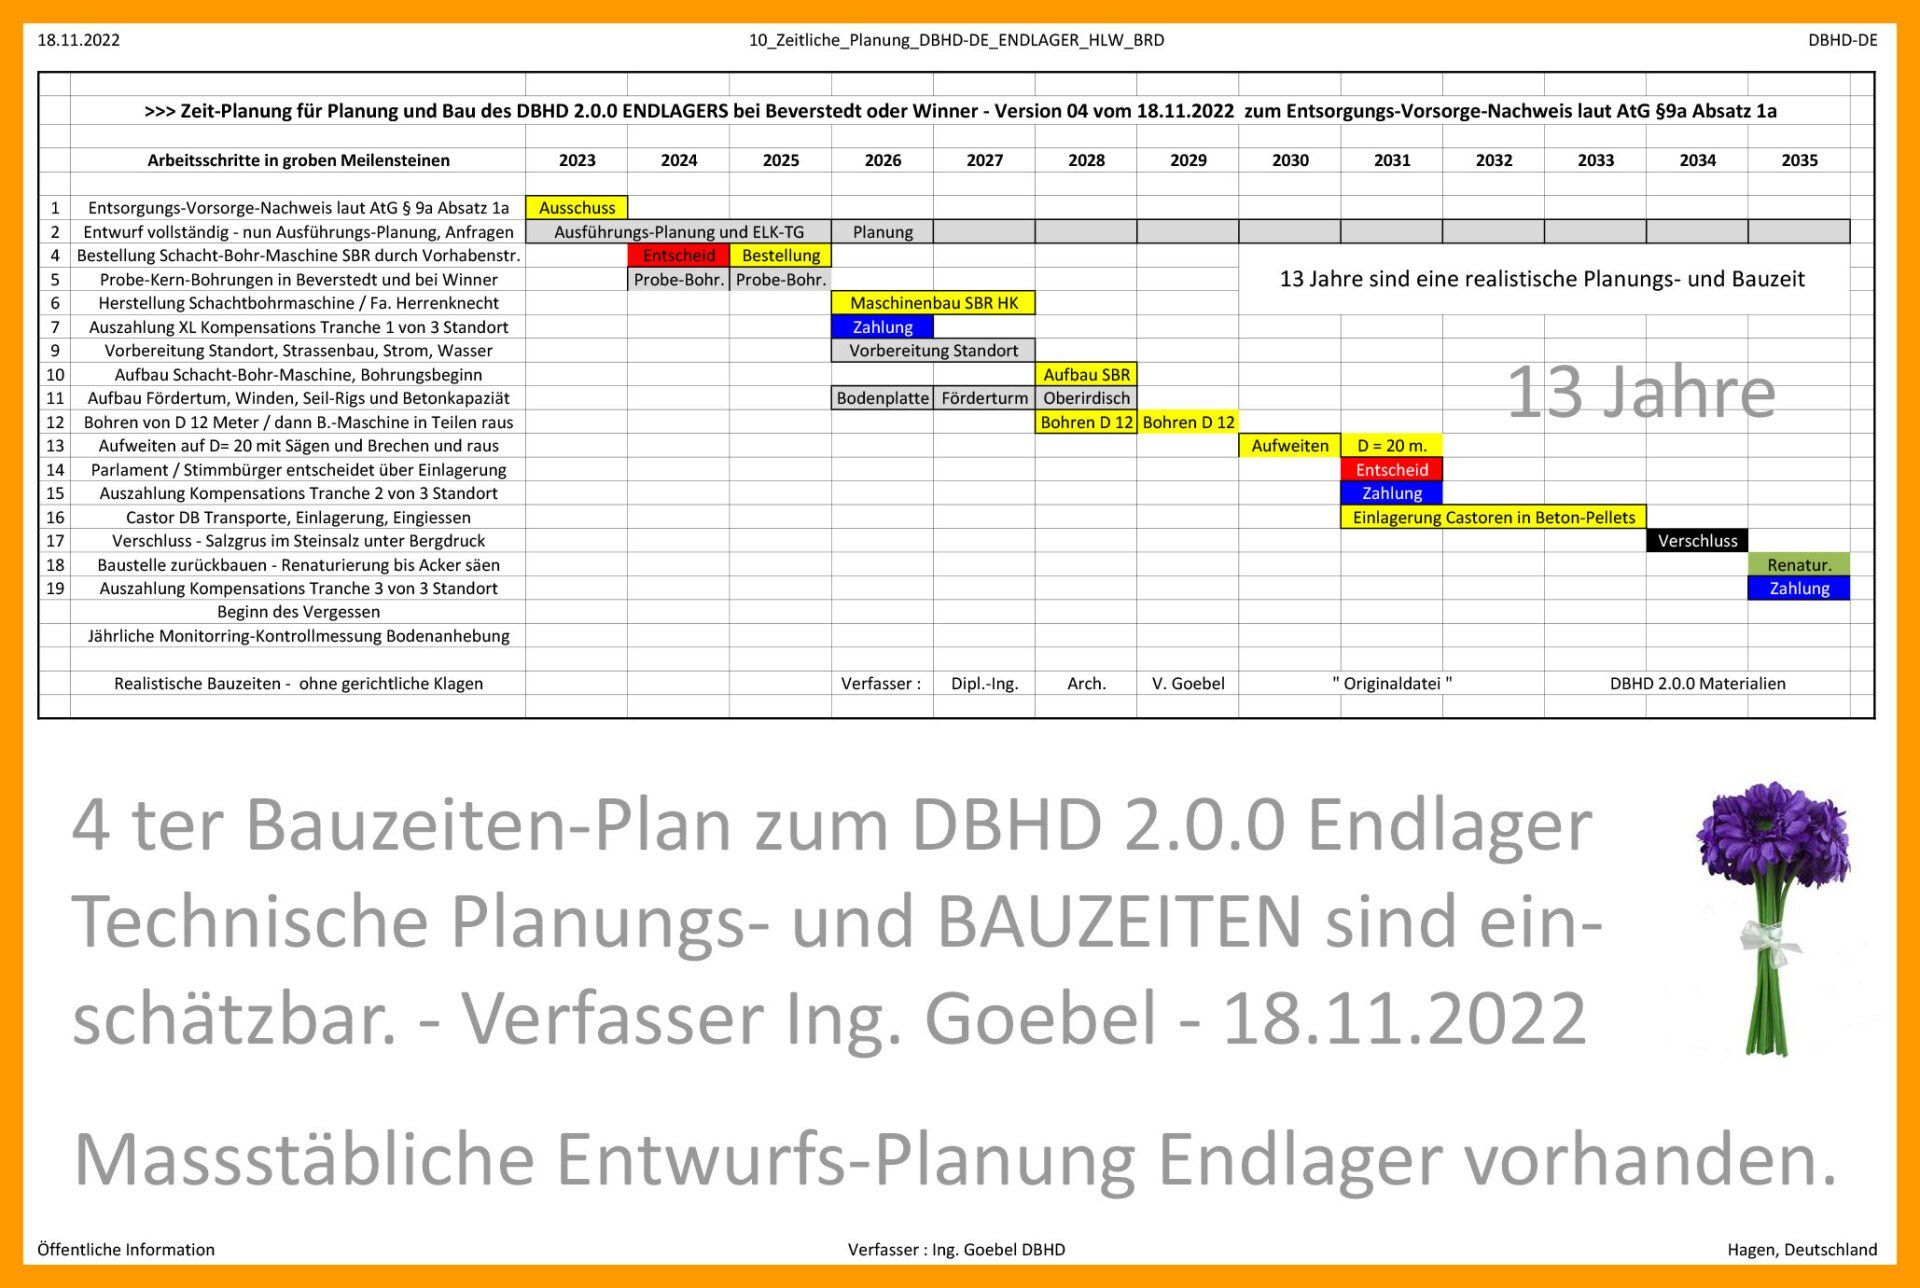 Es gab schon eine Bauzeiten-Planung für DBHD - die musste ich nur überarbeiten     Bauzeiten-Plan - vierte Version - für DBHD 2.0.0 HLW Endlager bei Beverstedt - Entsorgungs-Vorsorge-Nachweis